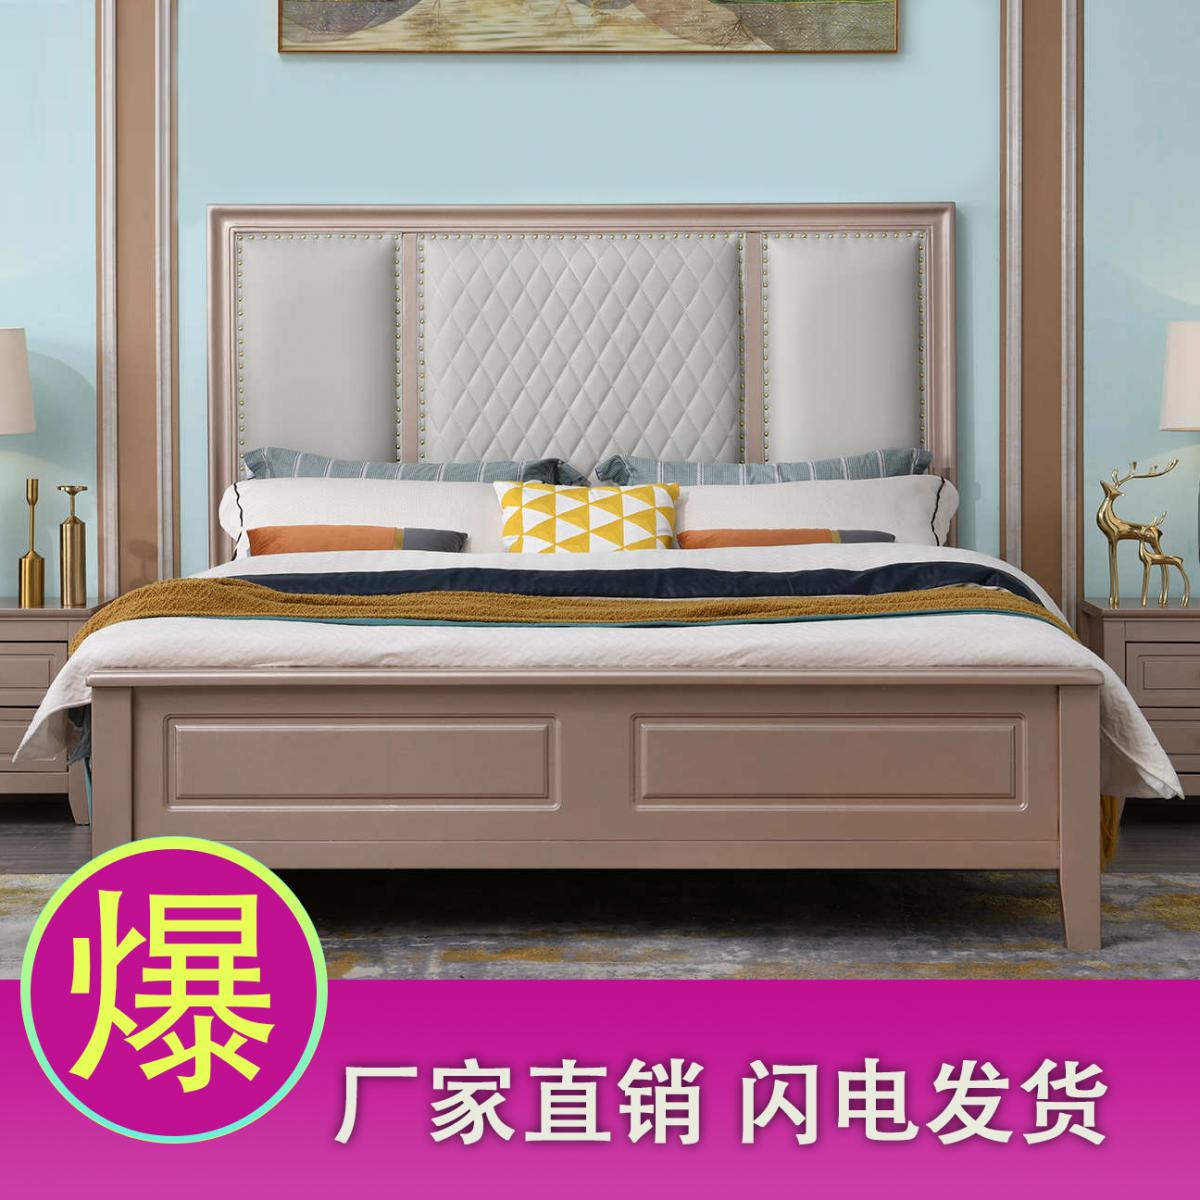 现代简约美式实木床欧式轻奢家用卧室1.8米双人床1.5米床